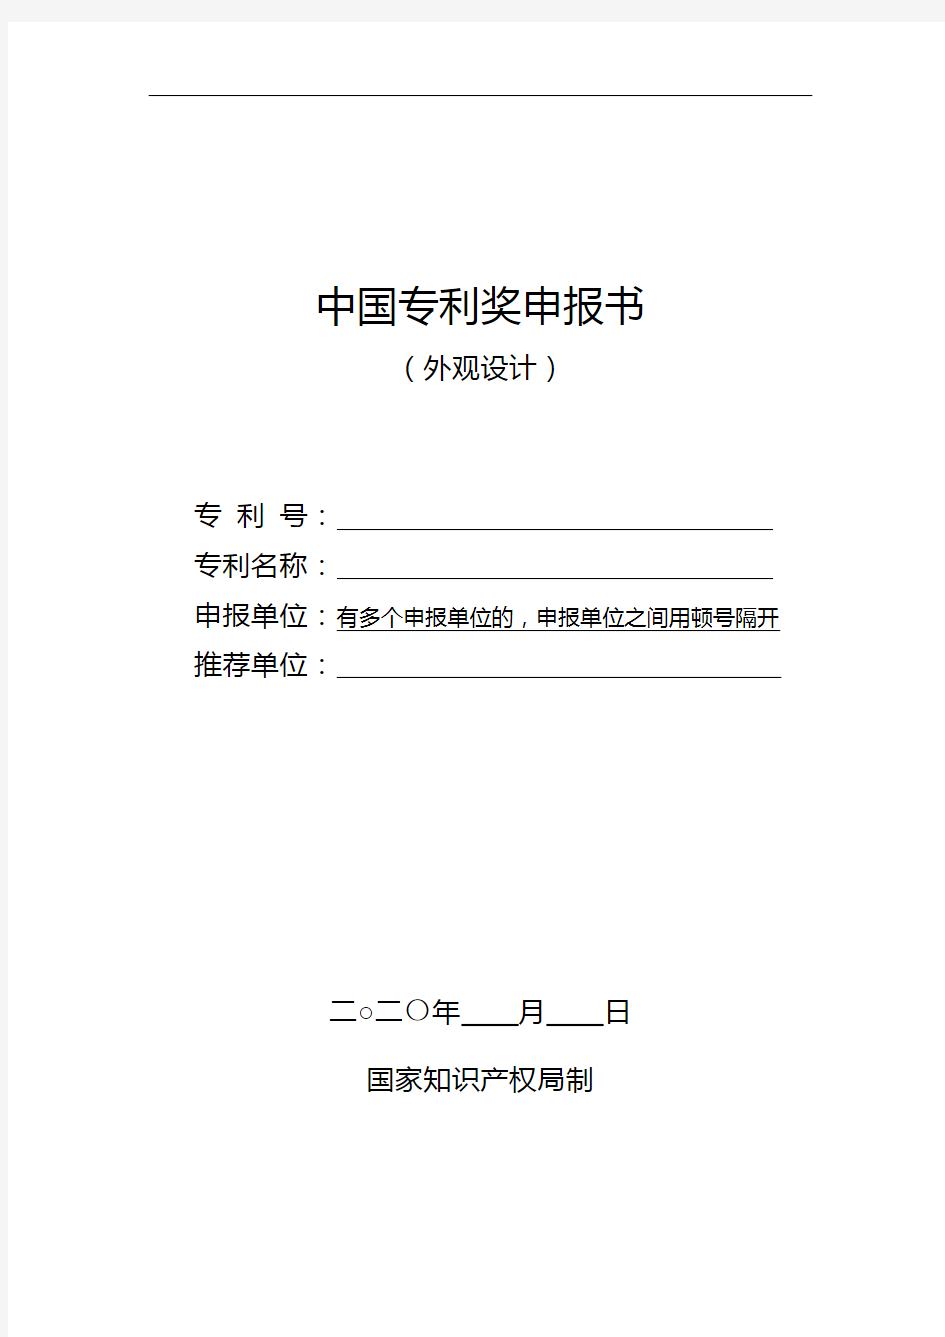 中国专利奖申报书(外观设计)